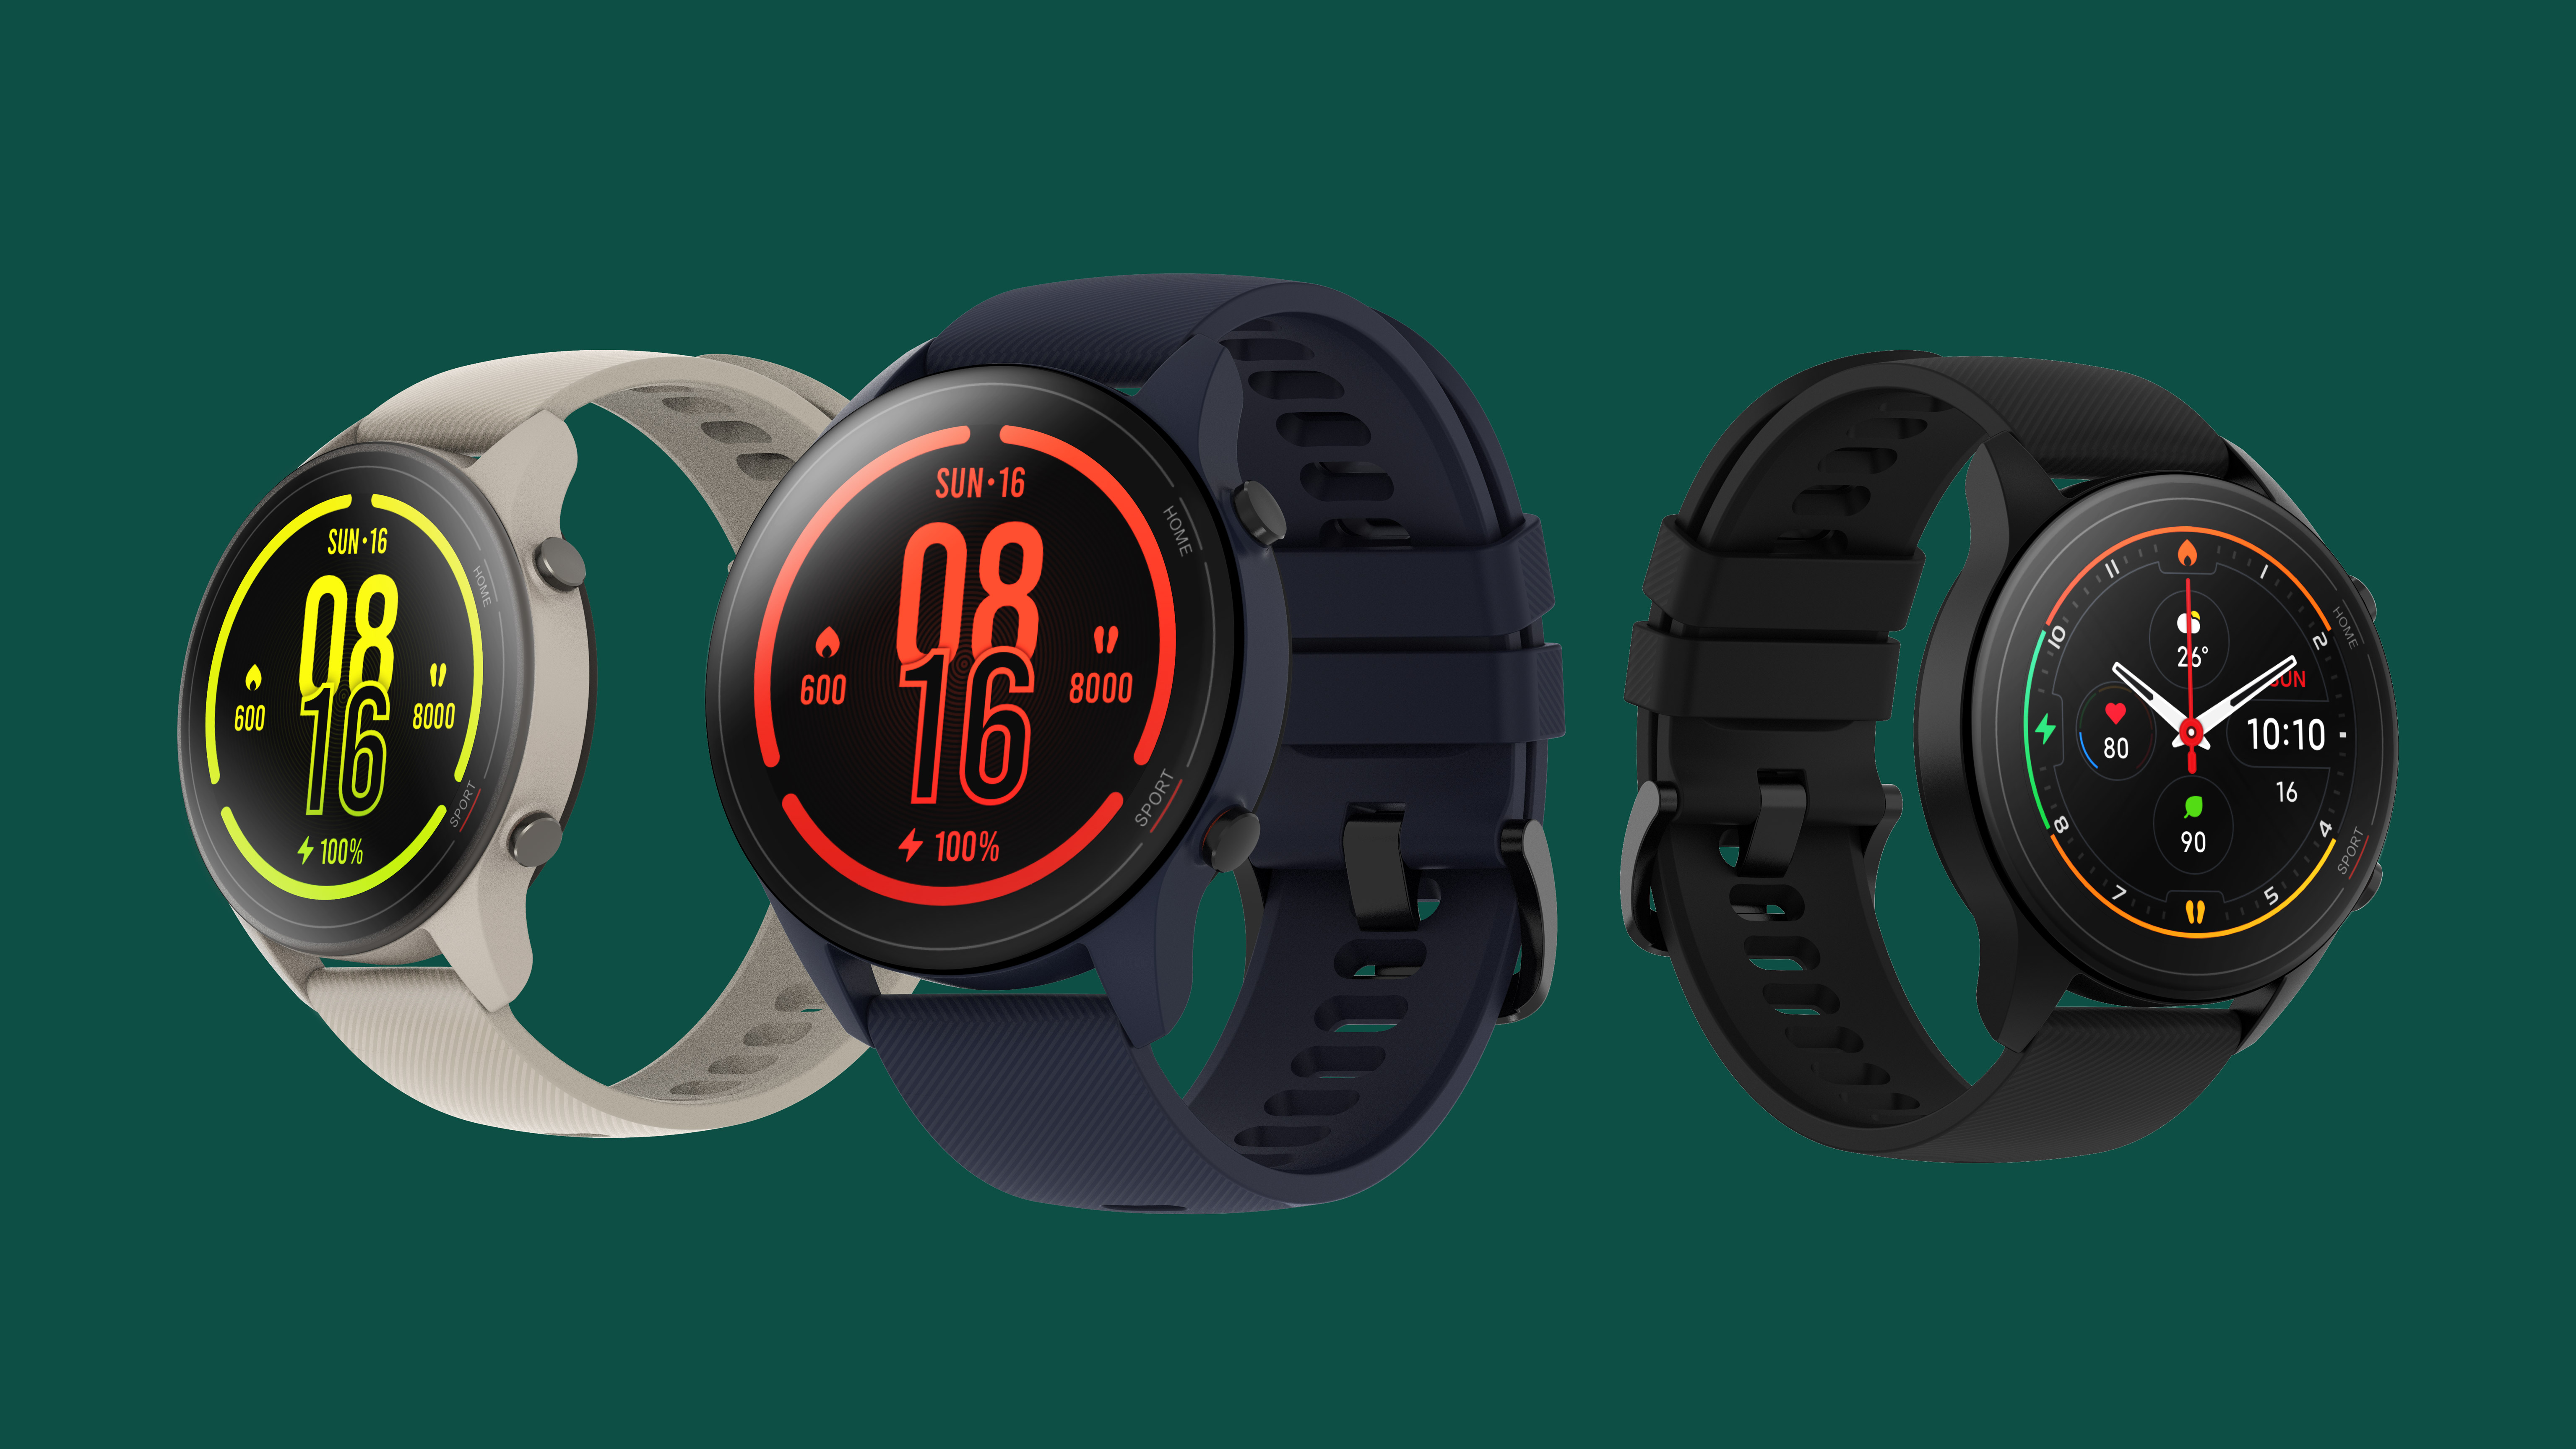 Двойные часы на xiaomi. Xiaomi умные часы 2020. Xiaomi mi watch старт продаж. Спортивные часы Xiaomi mi Bad. Виджеты часов для Xiaomi.